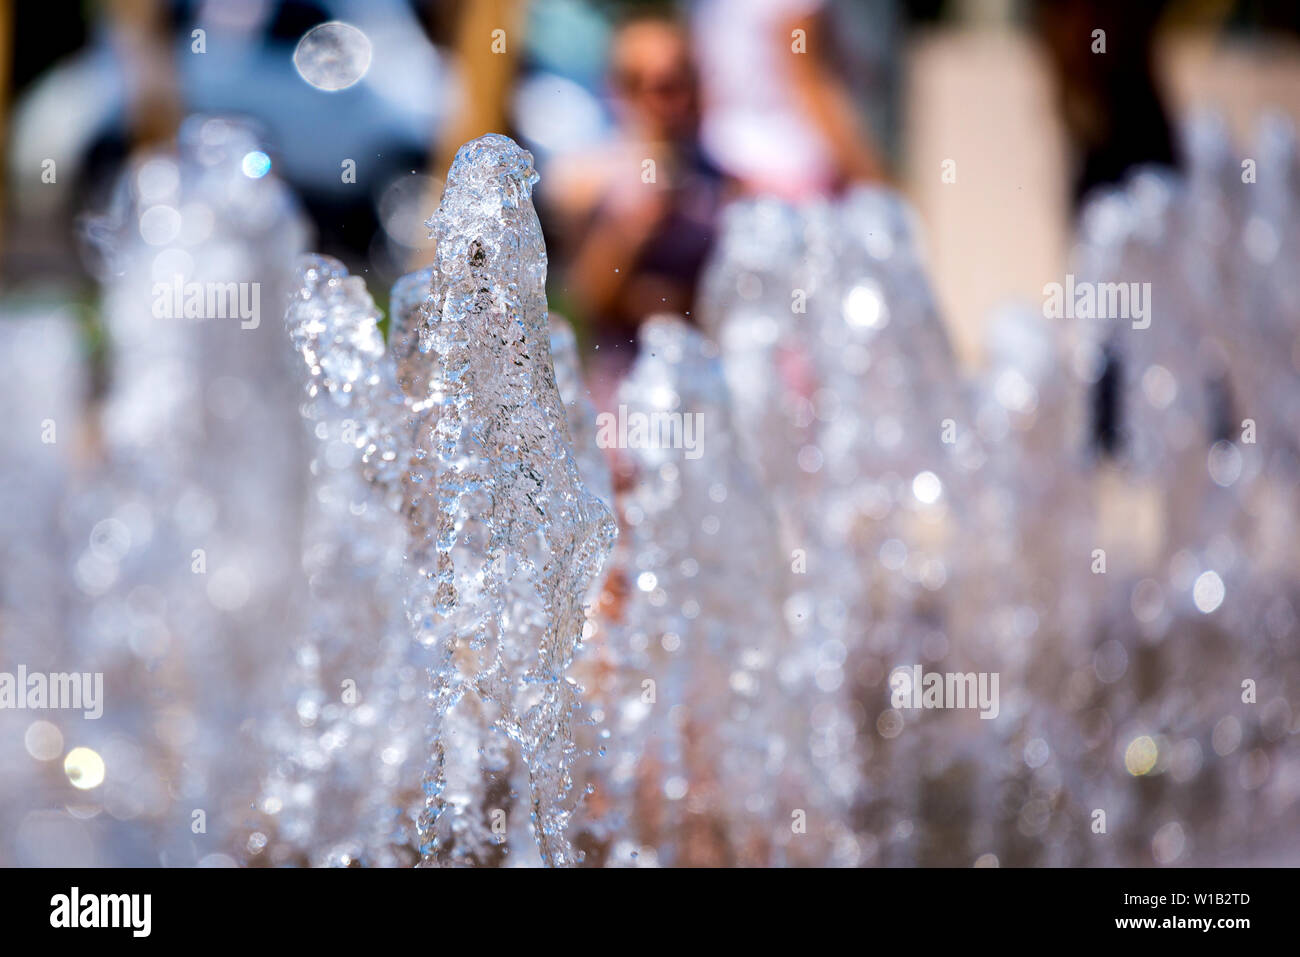 Festbild spashing Wasser aus einem Brunnen. Stockfoto